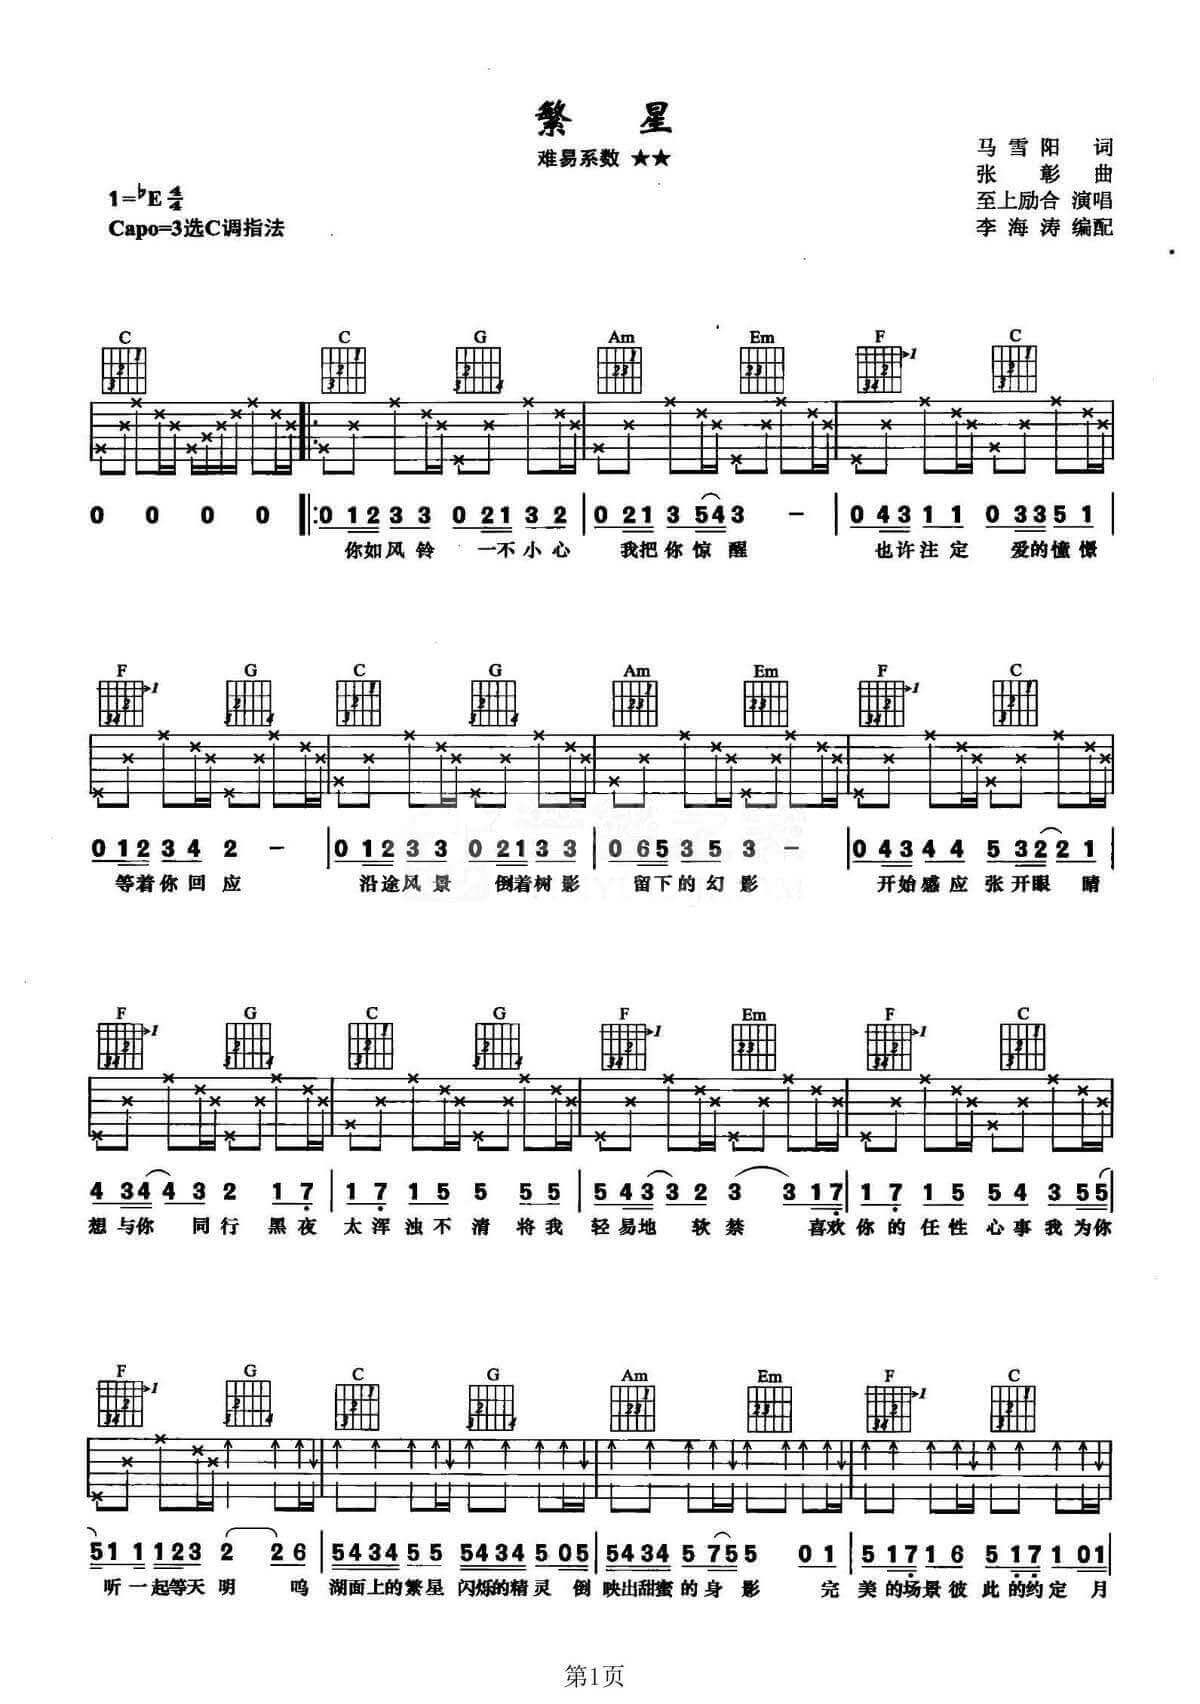 繁星吉他谱 C调李海涛编配分解和弦版本-至上励合插图